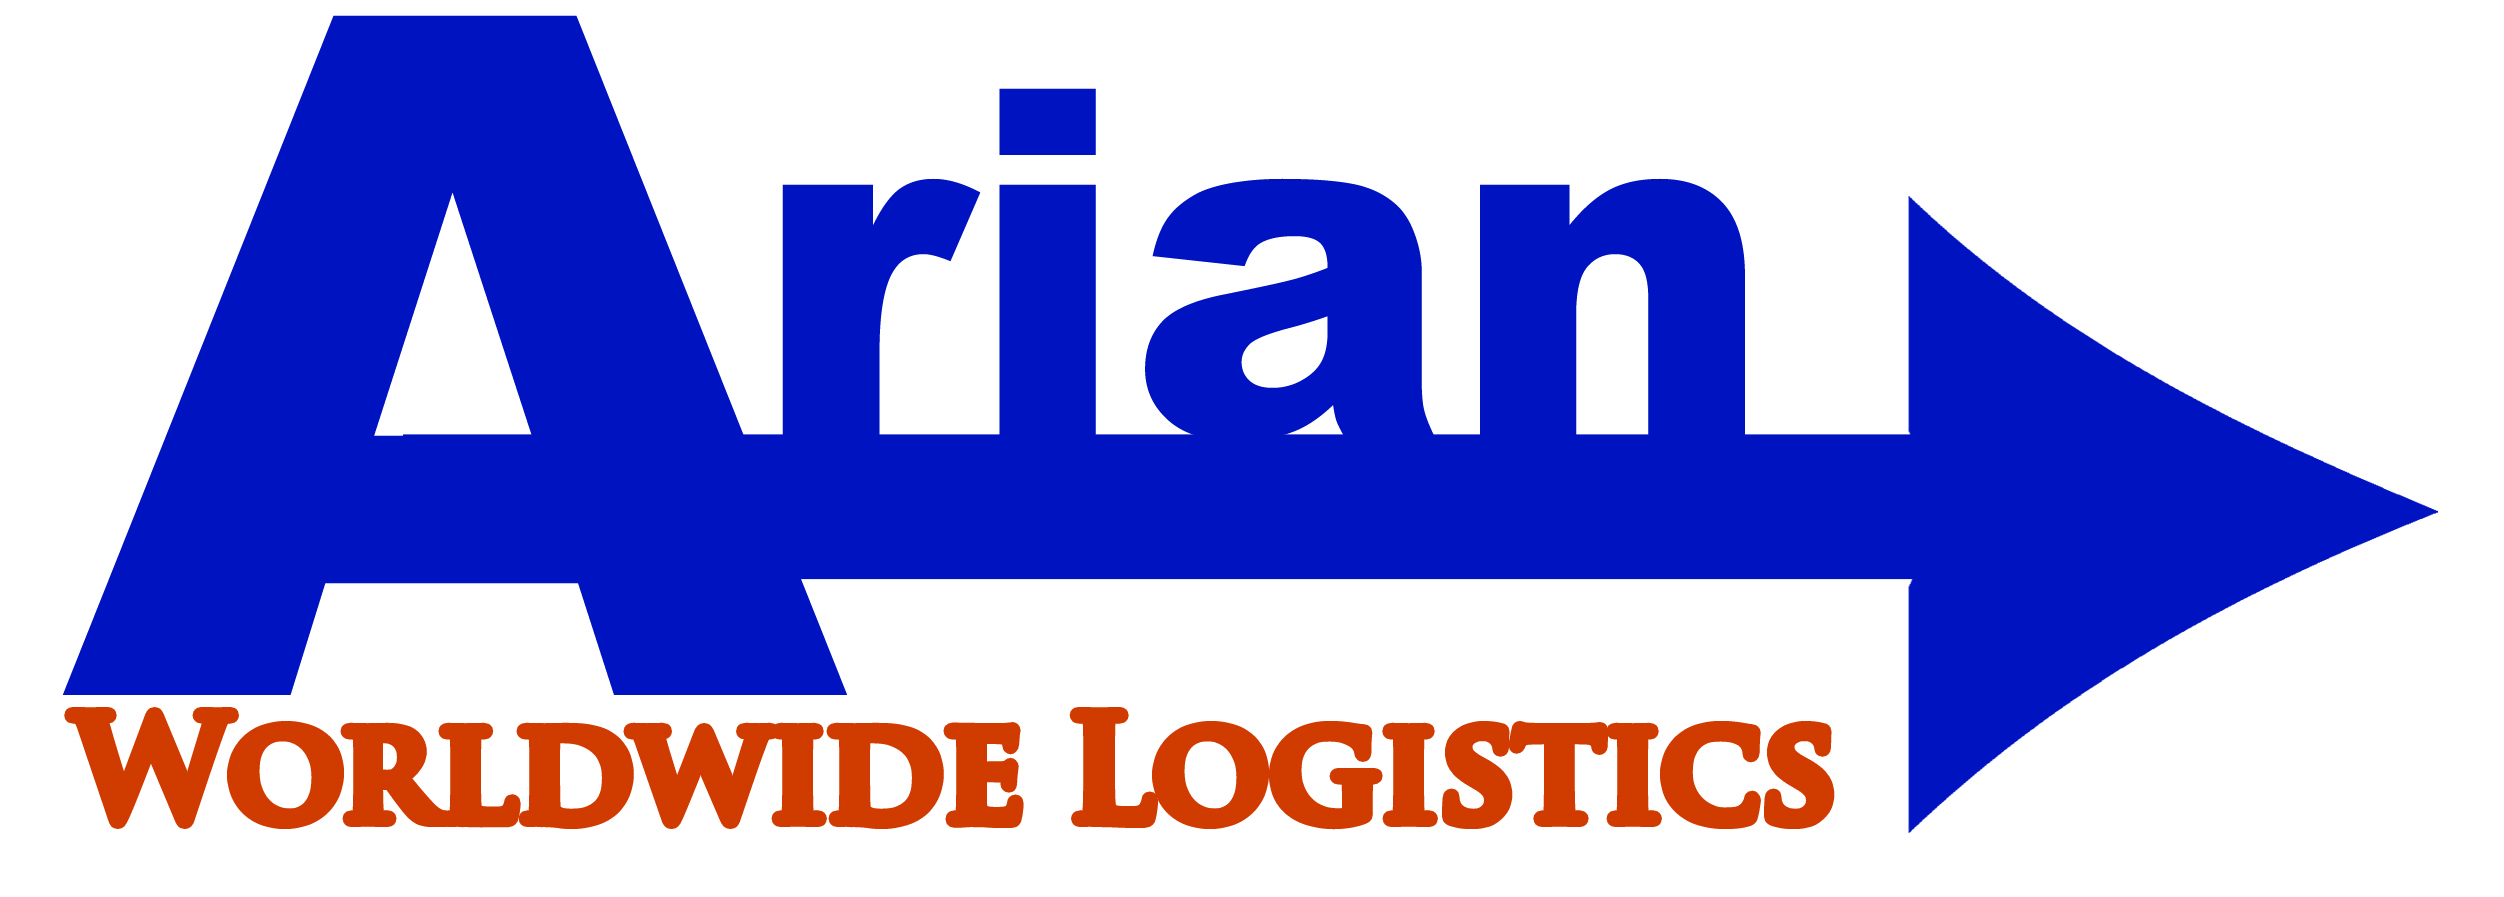 Arian Worldwide Logistics Pte Ltd.